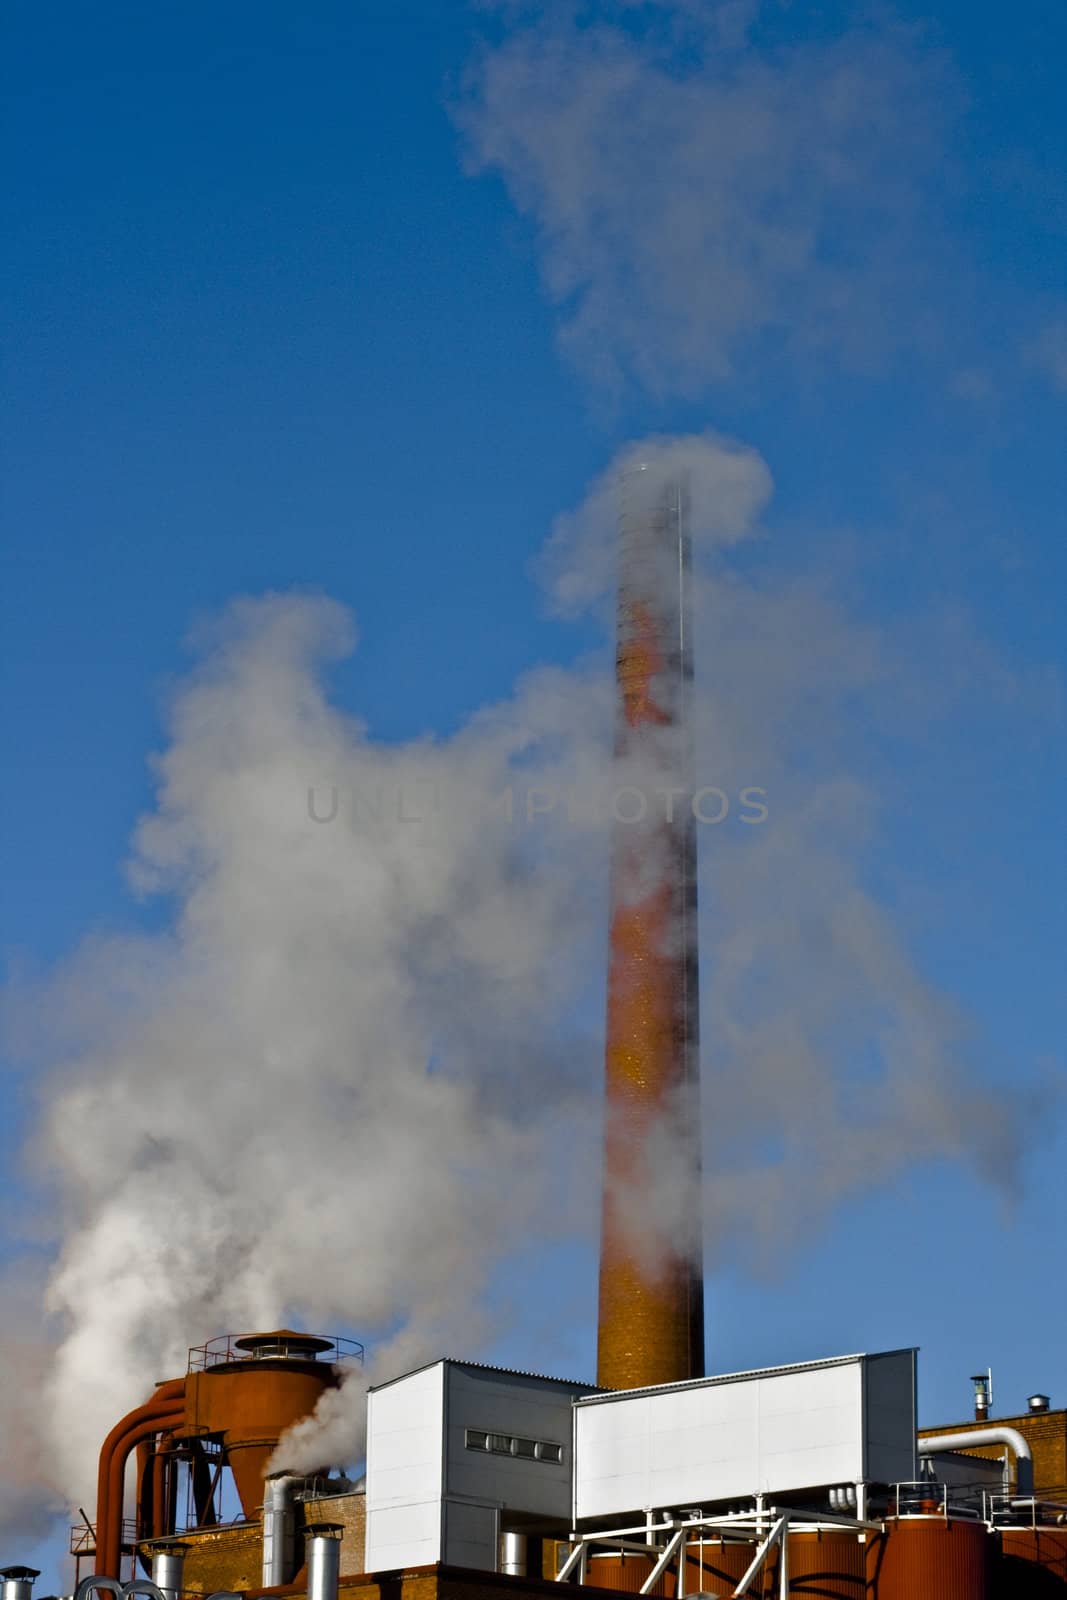 fabrike smoke with blue sky as background